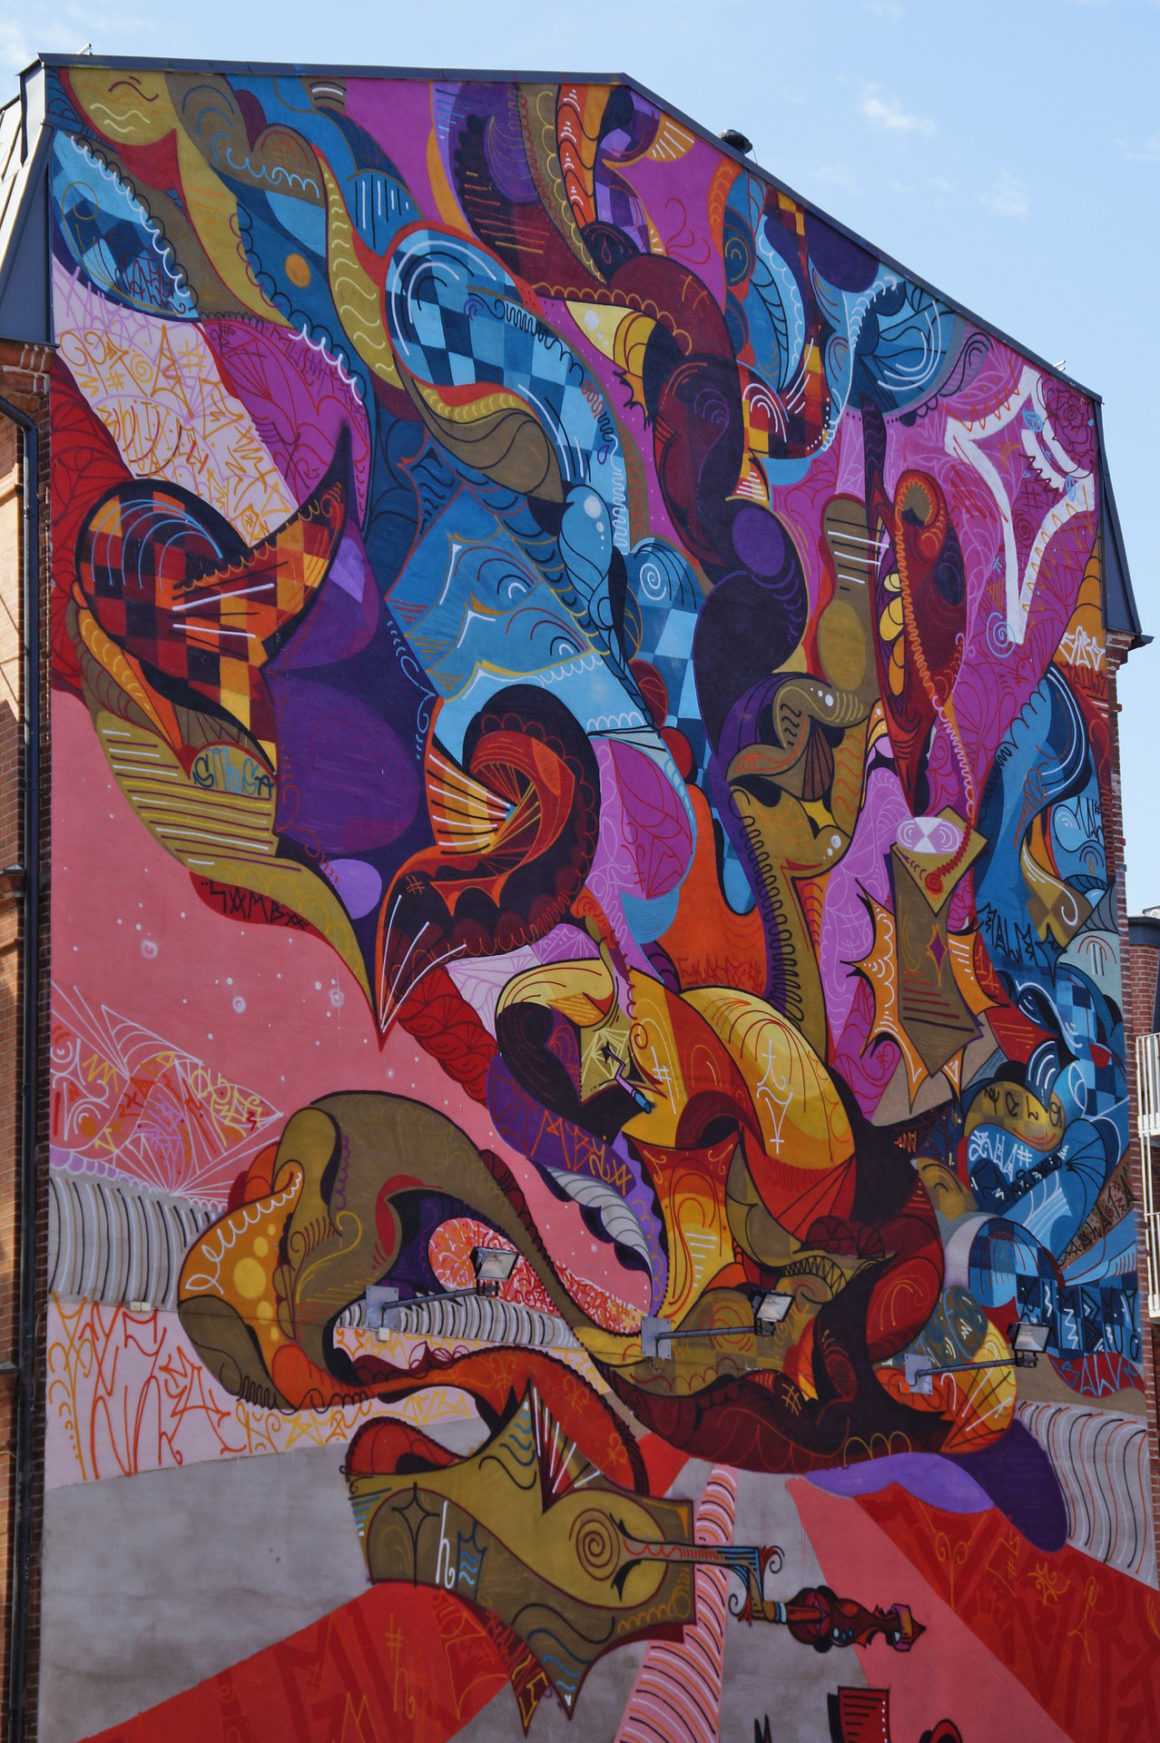 Ola Kalnins' mural in Malmo - Street art in Sweden